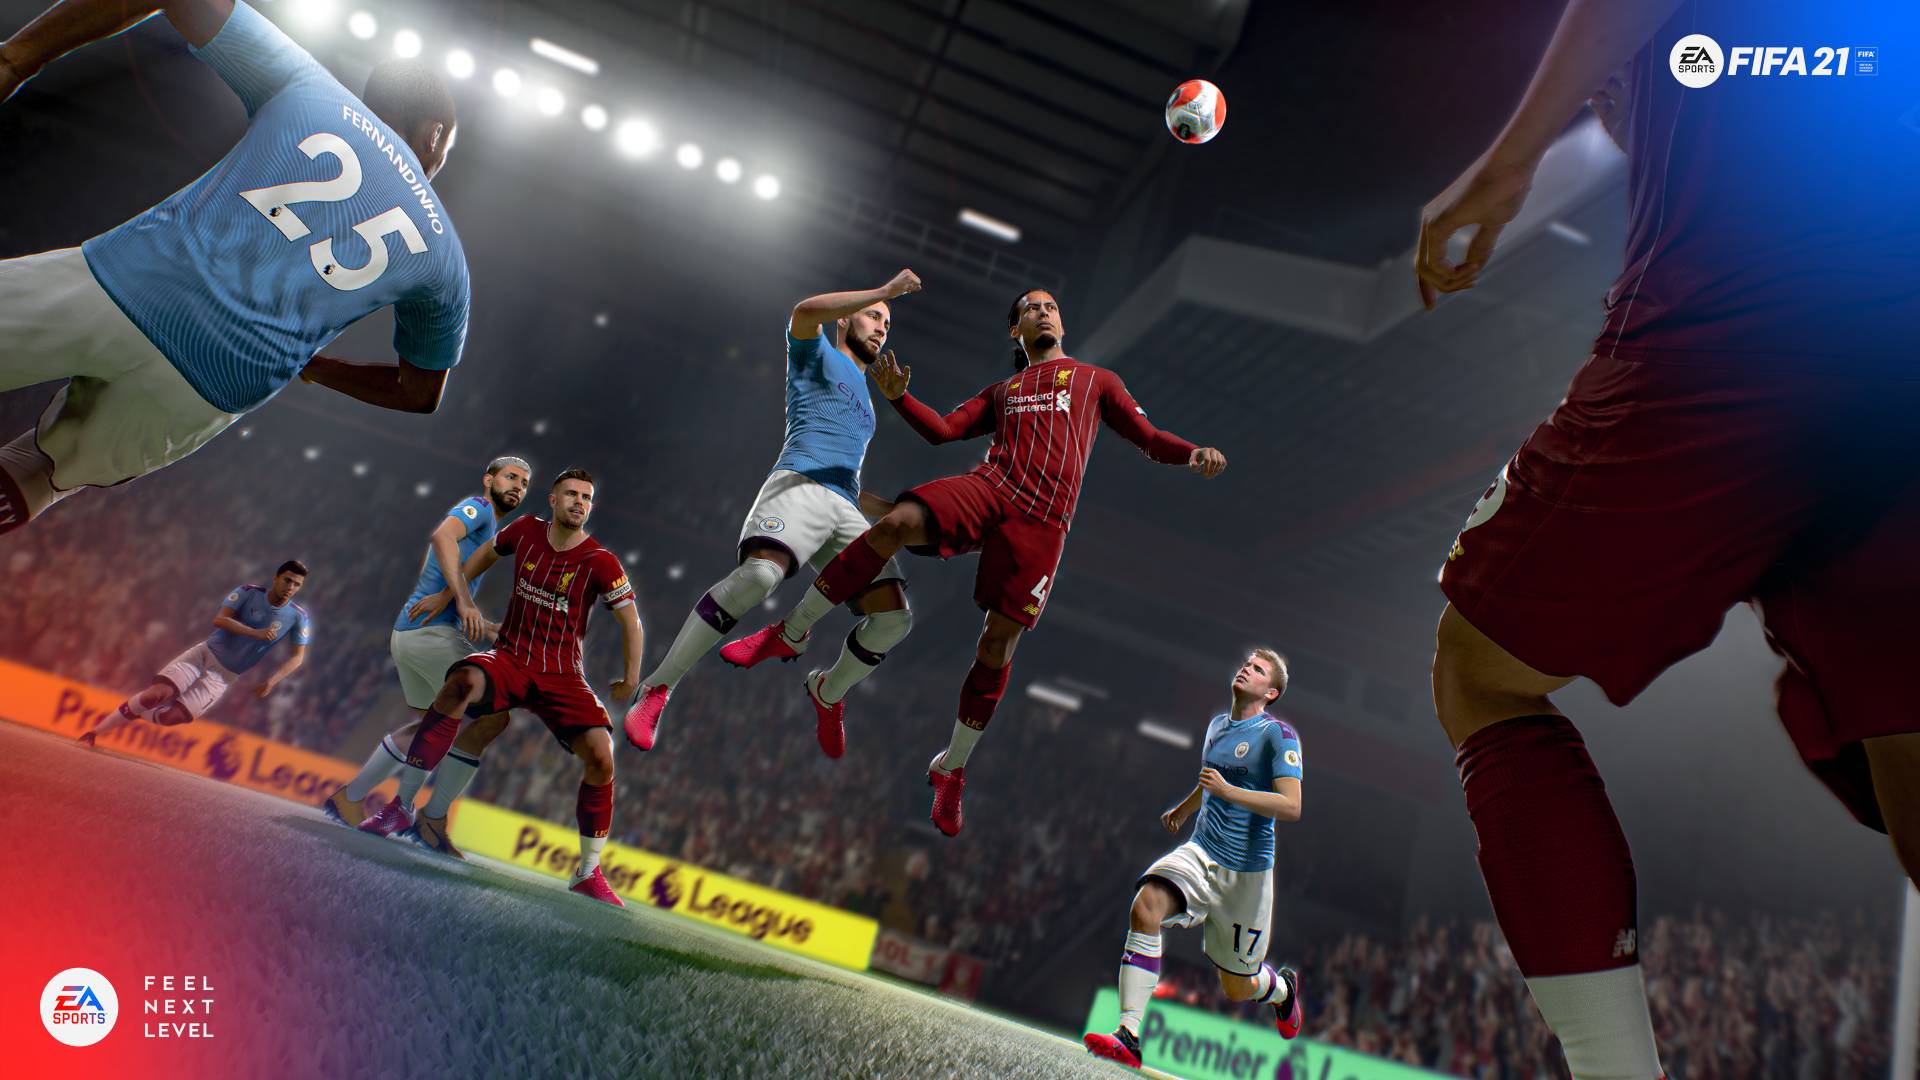 FIFA 21 Ultimate Team'in resmi fragmanı yayınlandı